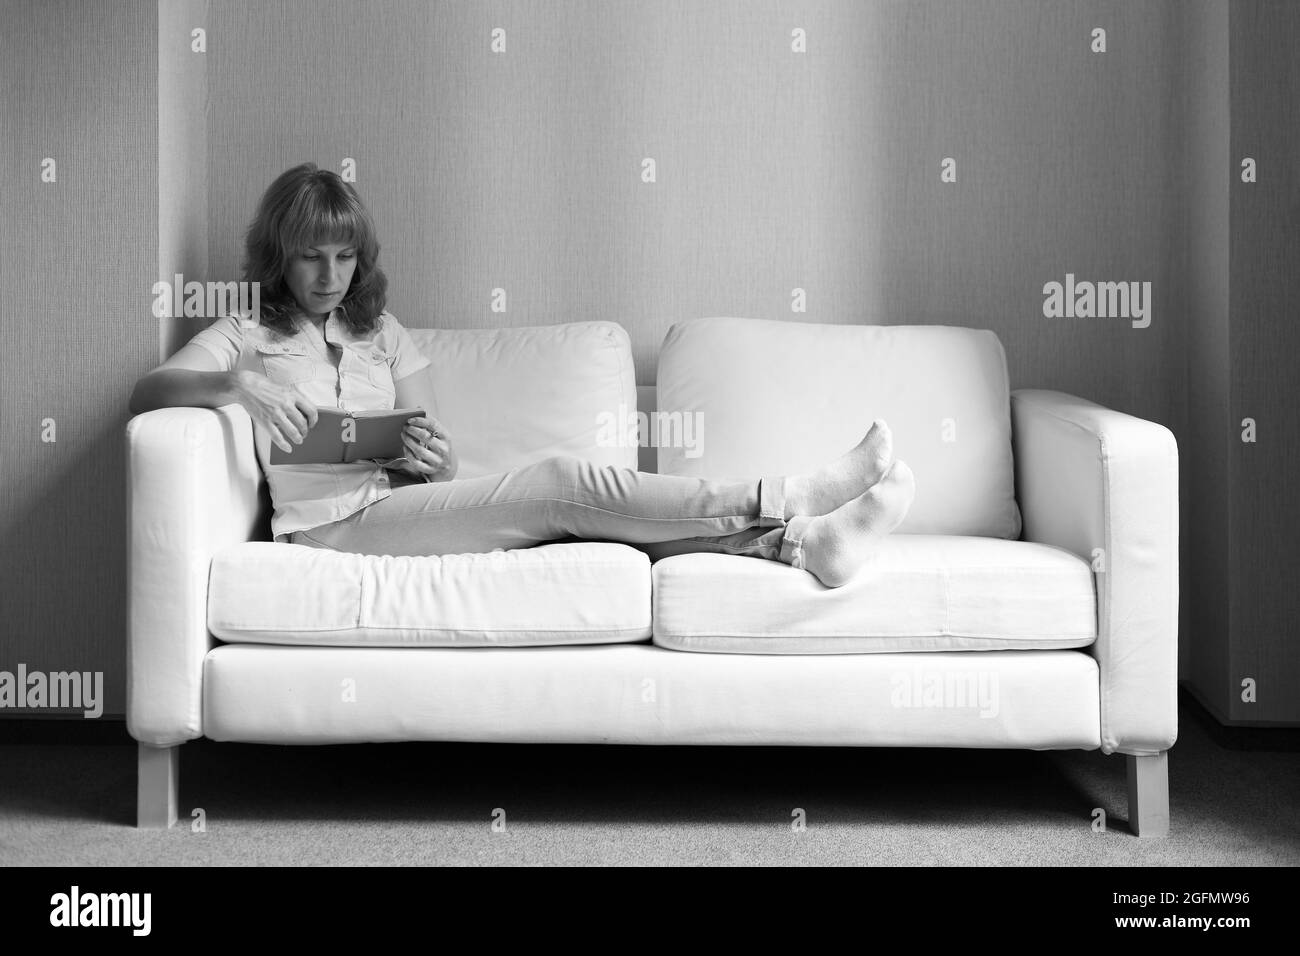 Une jeune femme dans une chemise bleu clair et un Jean assis sur un canapé et tenant un livre dans la main. Image en noir et blanc. Banque D'Images